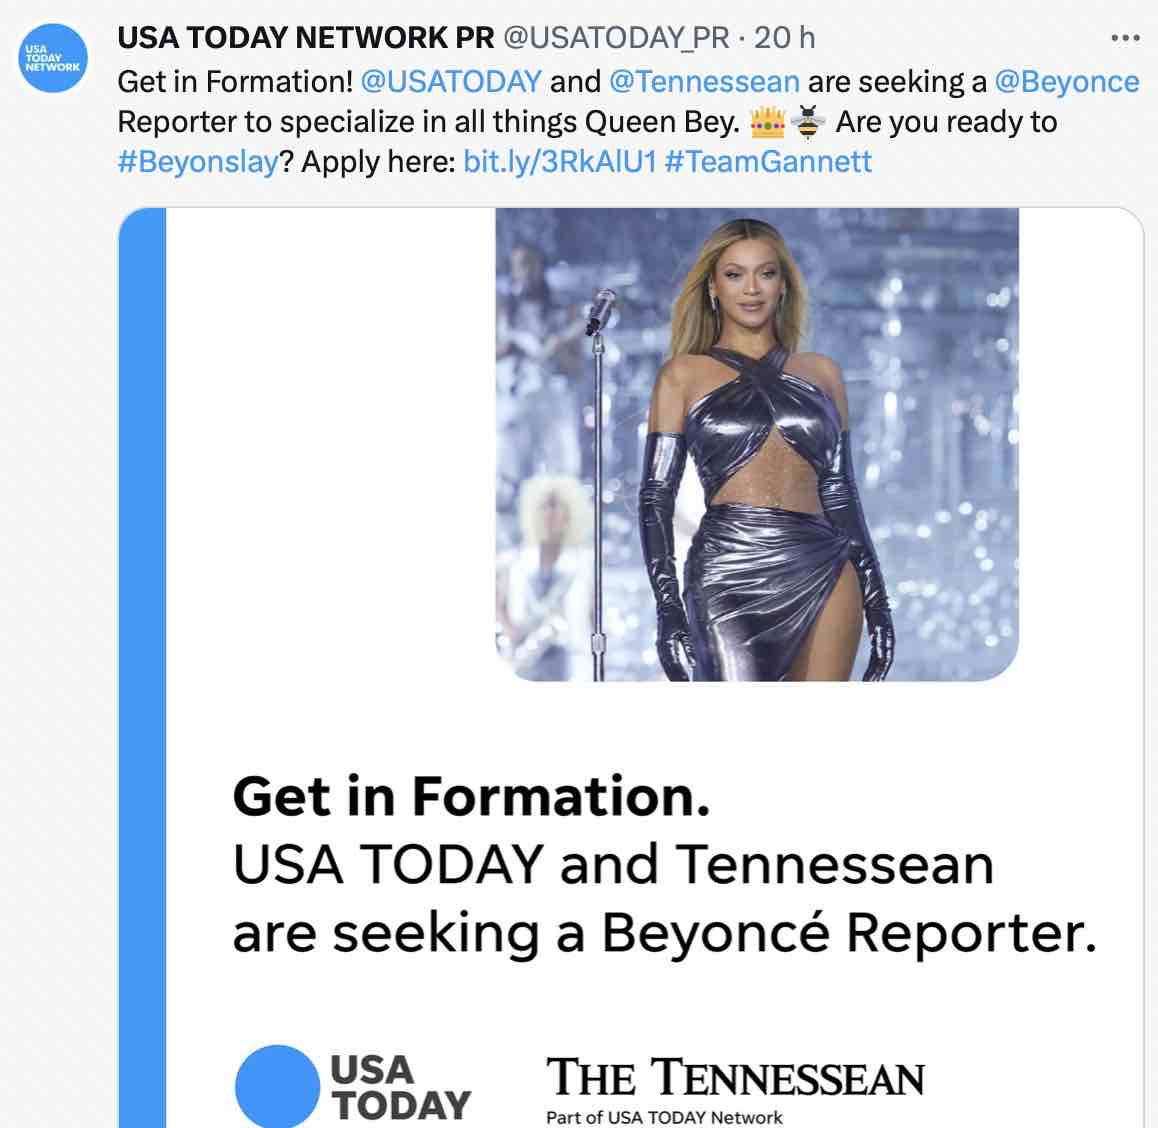 Anúncio vaga repórter para cobrir Beyoncé no grupo Gannett